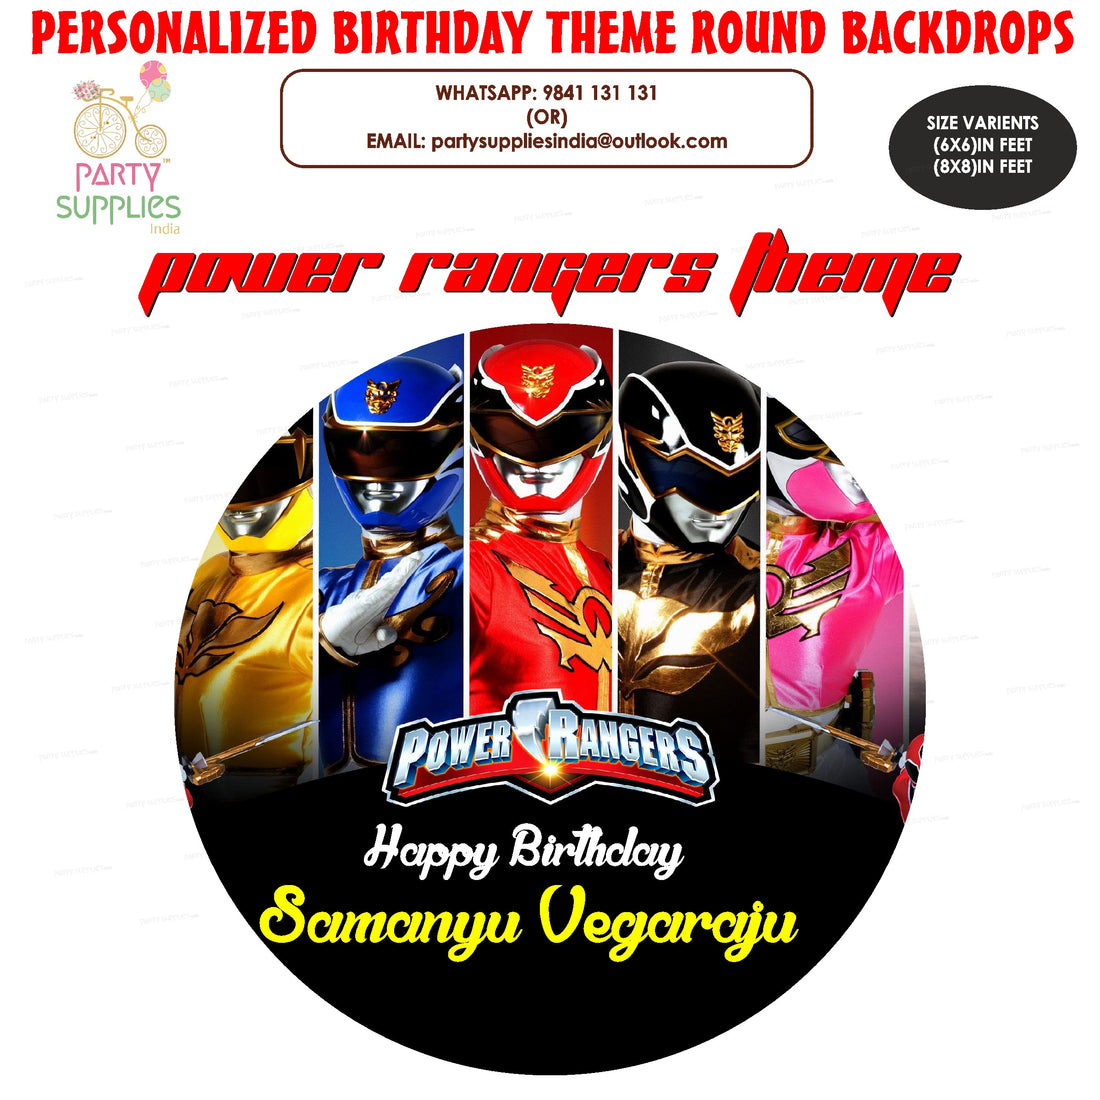 PSI Power Rangers Theme Customized Round Backdrop